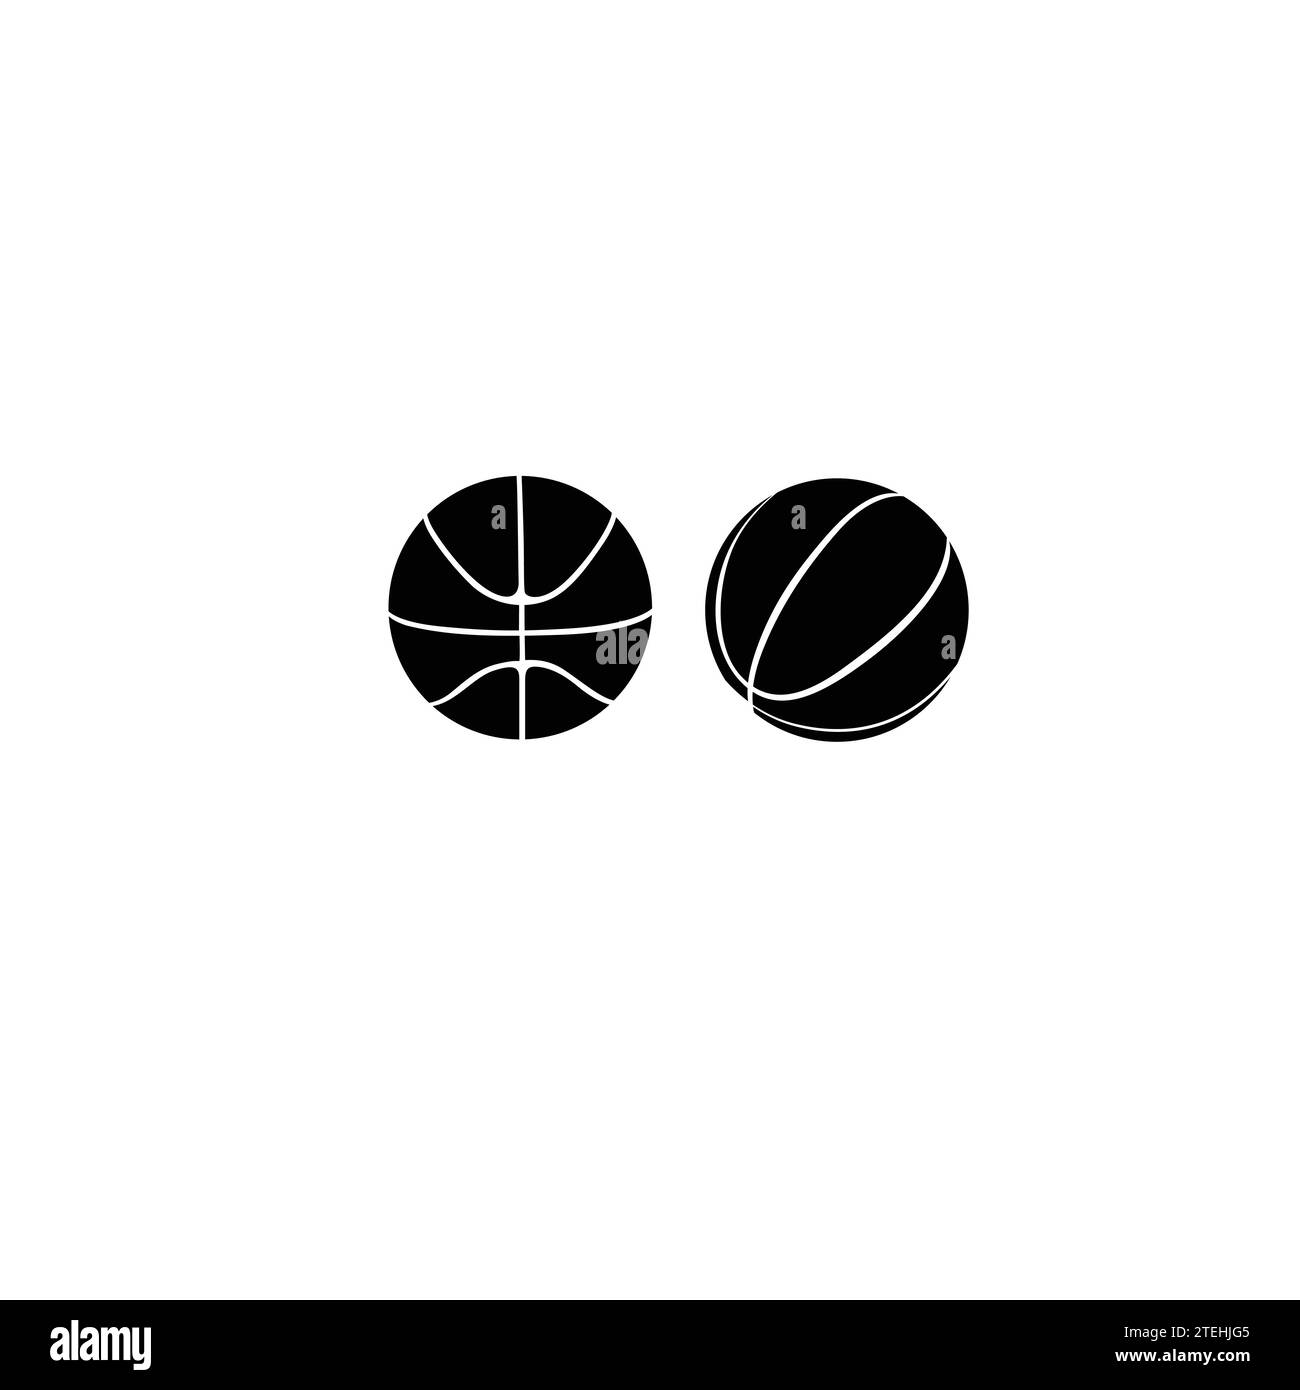 Symbole für Basketball, die flach sind. Sportsymbole in weiß und Schwarz. Basketbälle in Vektorform. Stock Vektor